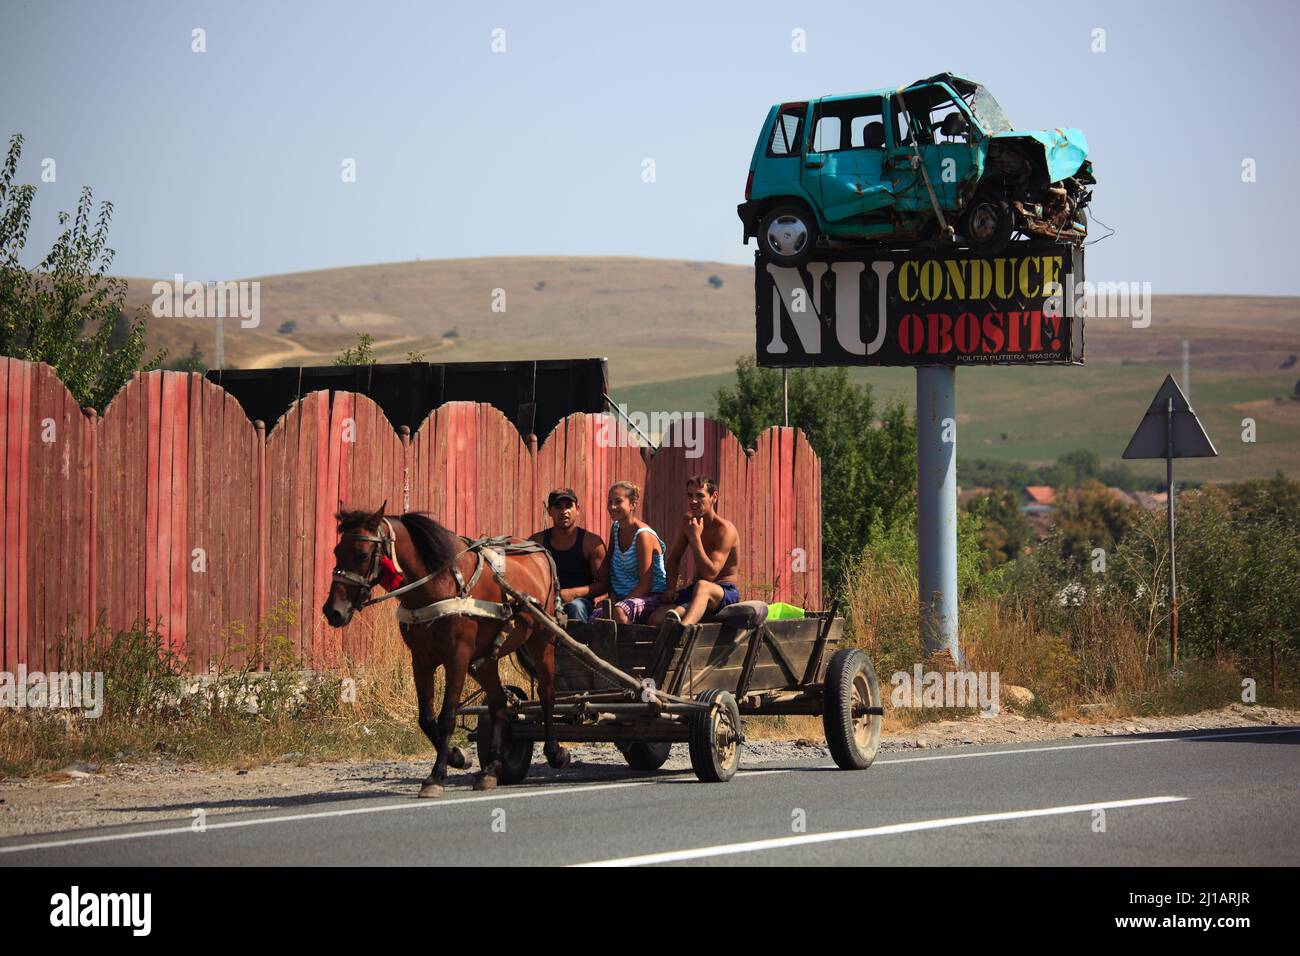 Straßenverkehr in Siebenbürgen, Rumänien, als Warnung wurde ein Unfallwagen als Verkehrsschild montiert, Pferdegespann auf der Straße / traffico stradale Foto Stock